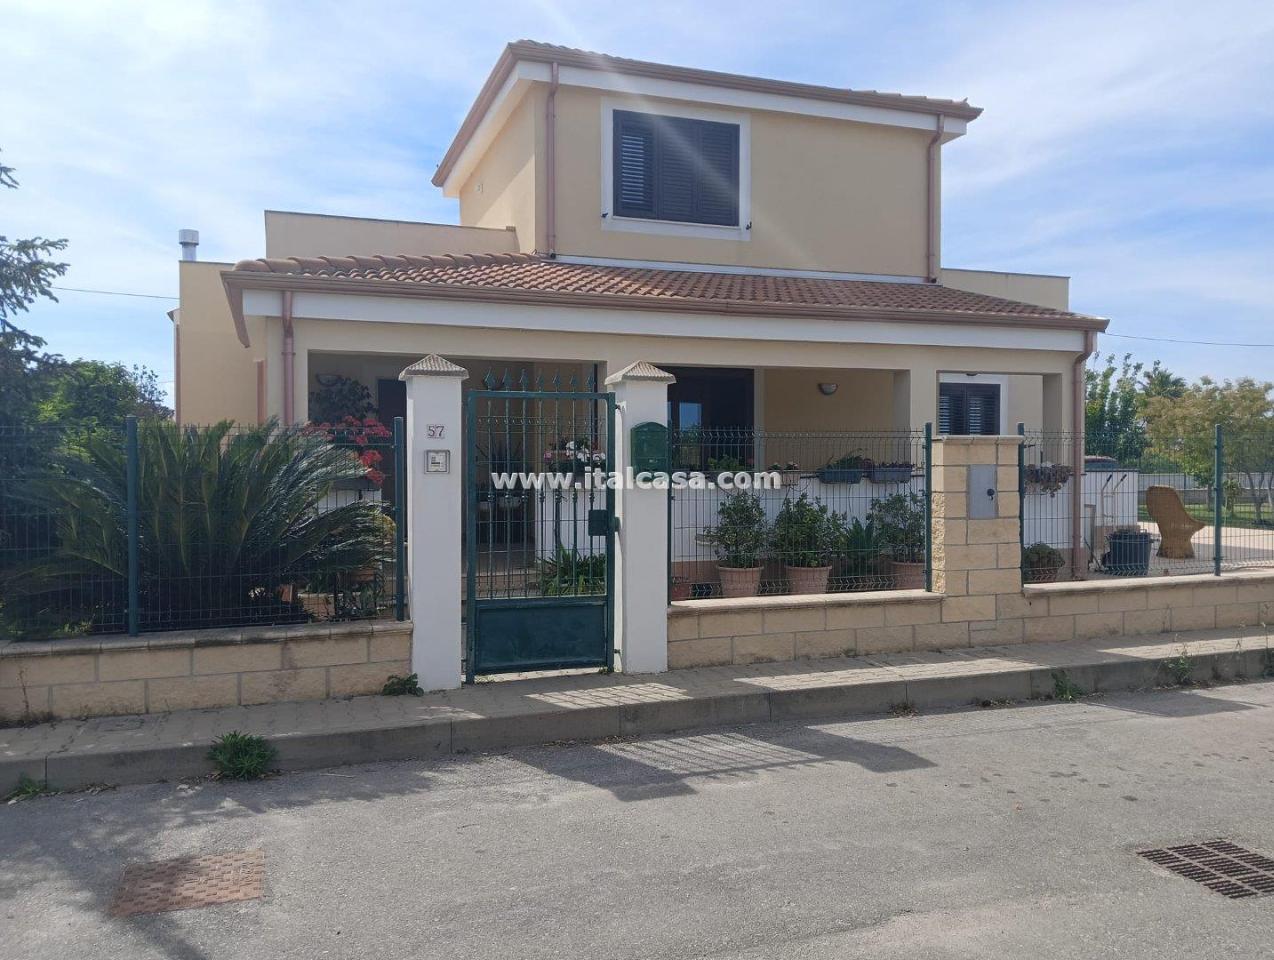 Villa in vendita a Crotone